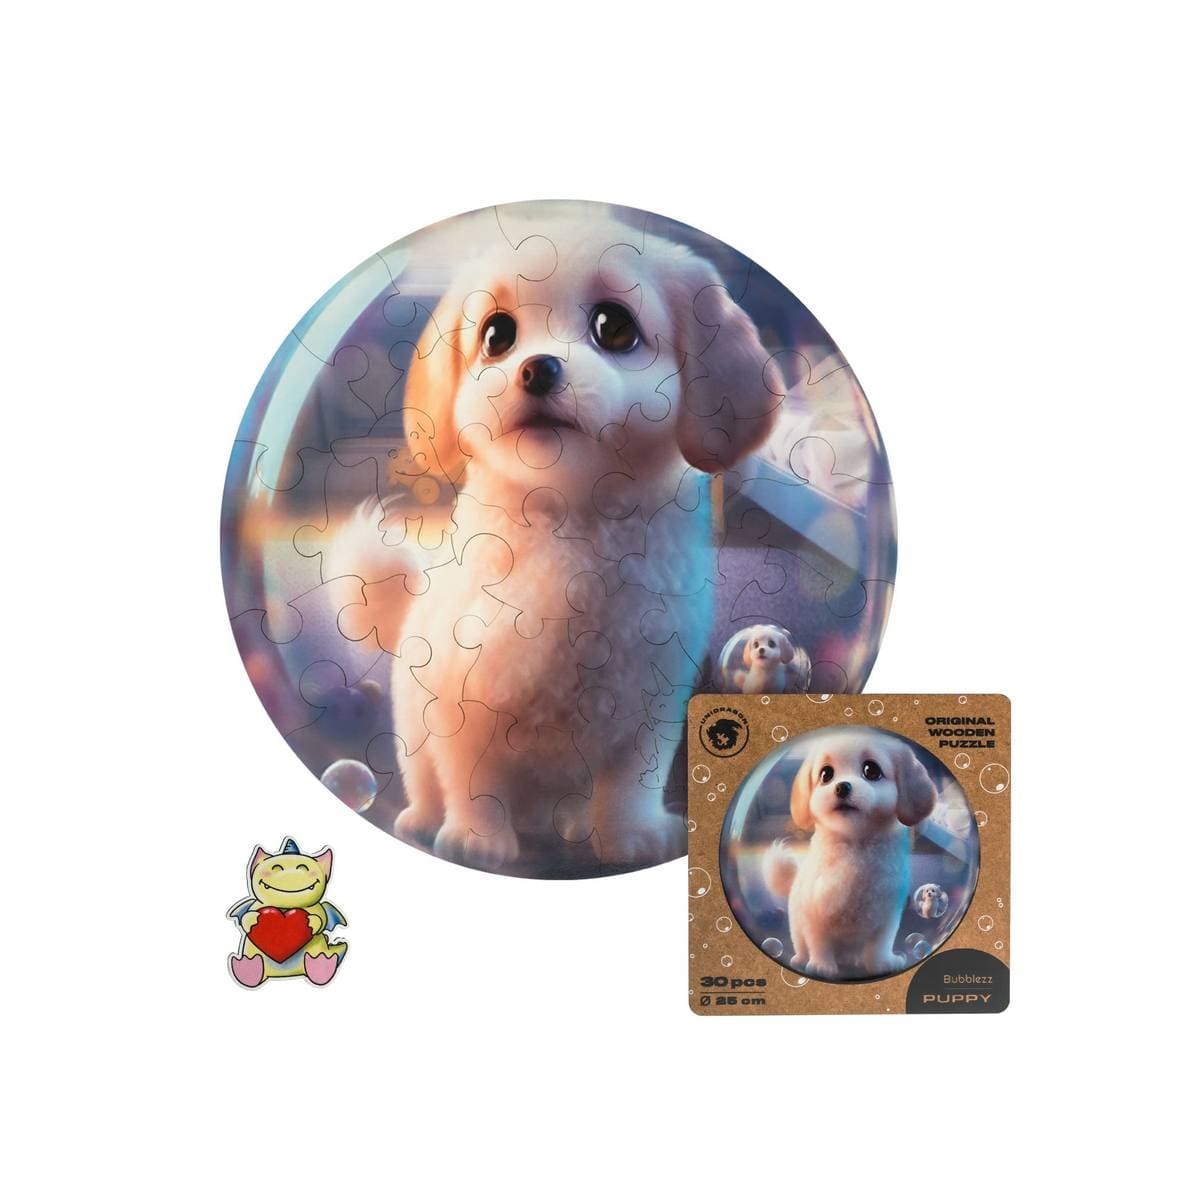 Unidragon Puzzle One Size — 9.8×9.8" — 30 pcs Bubblezz Puppy